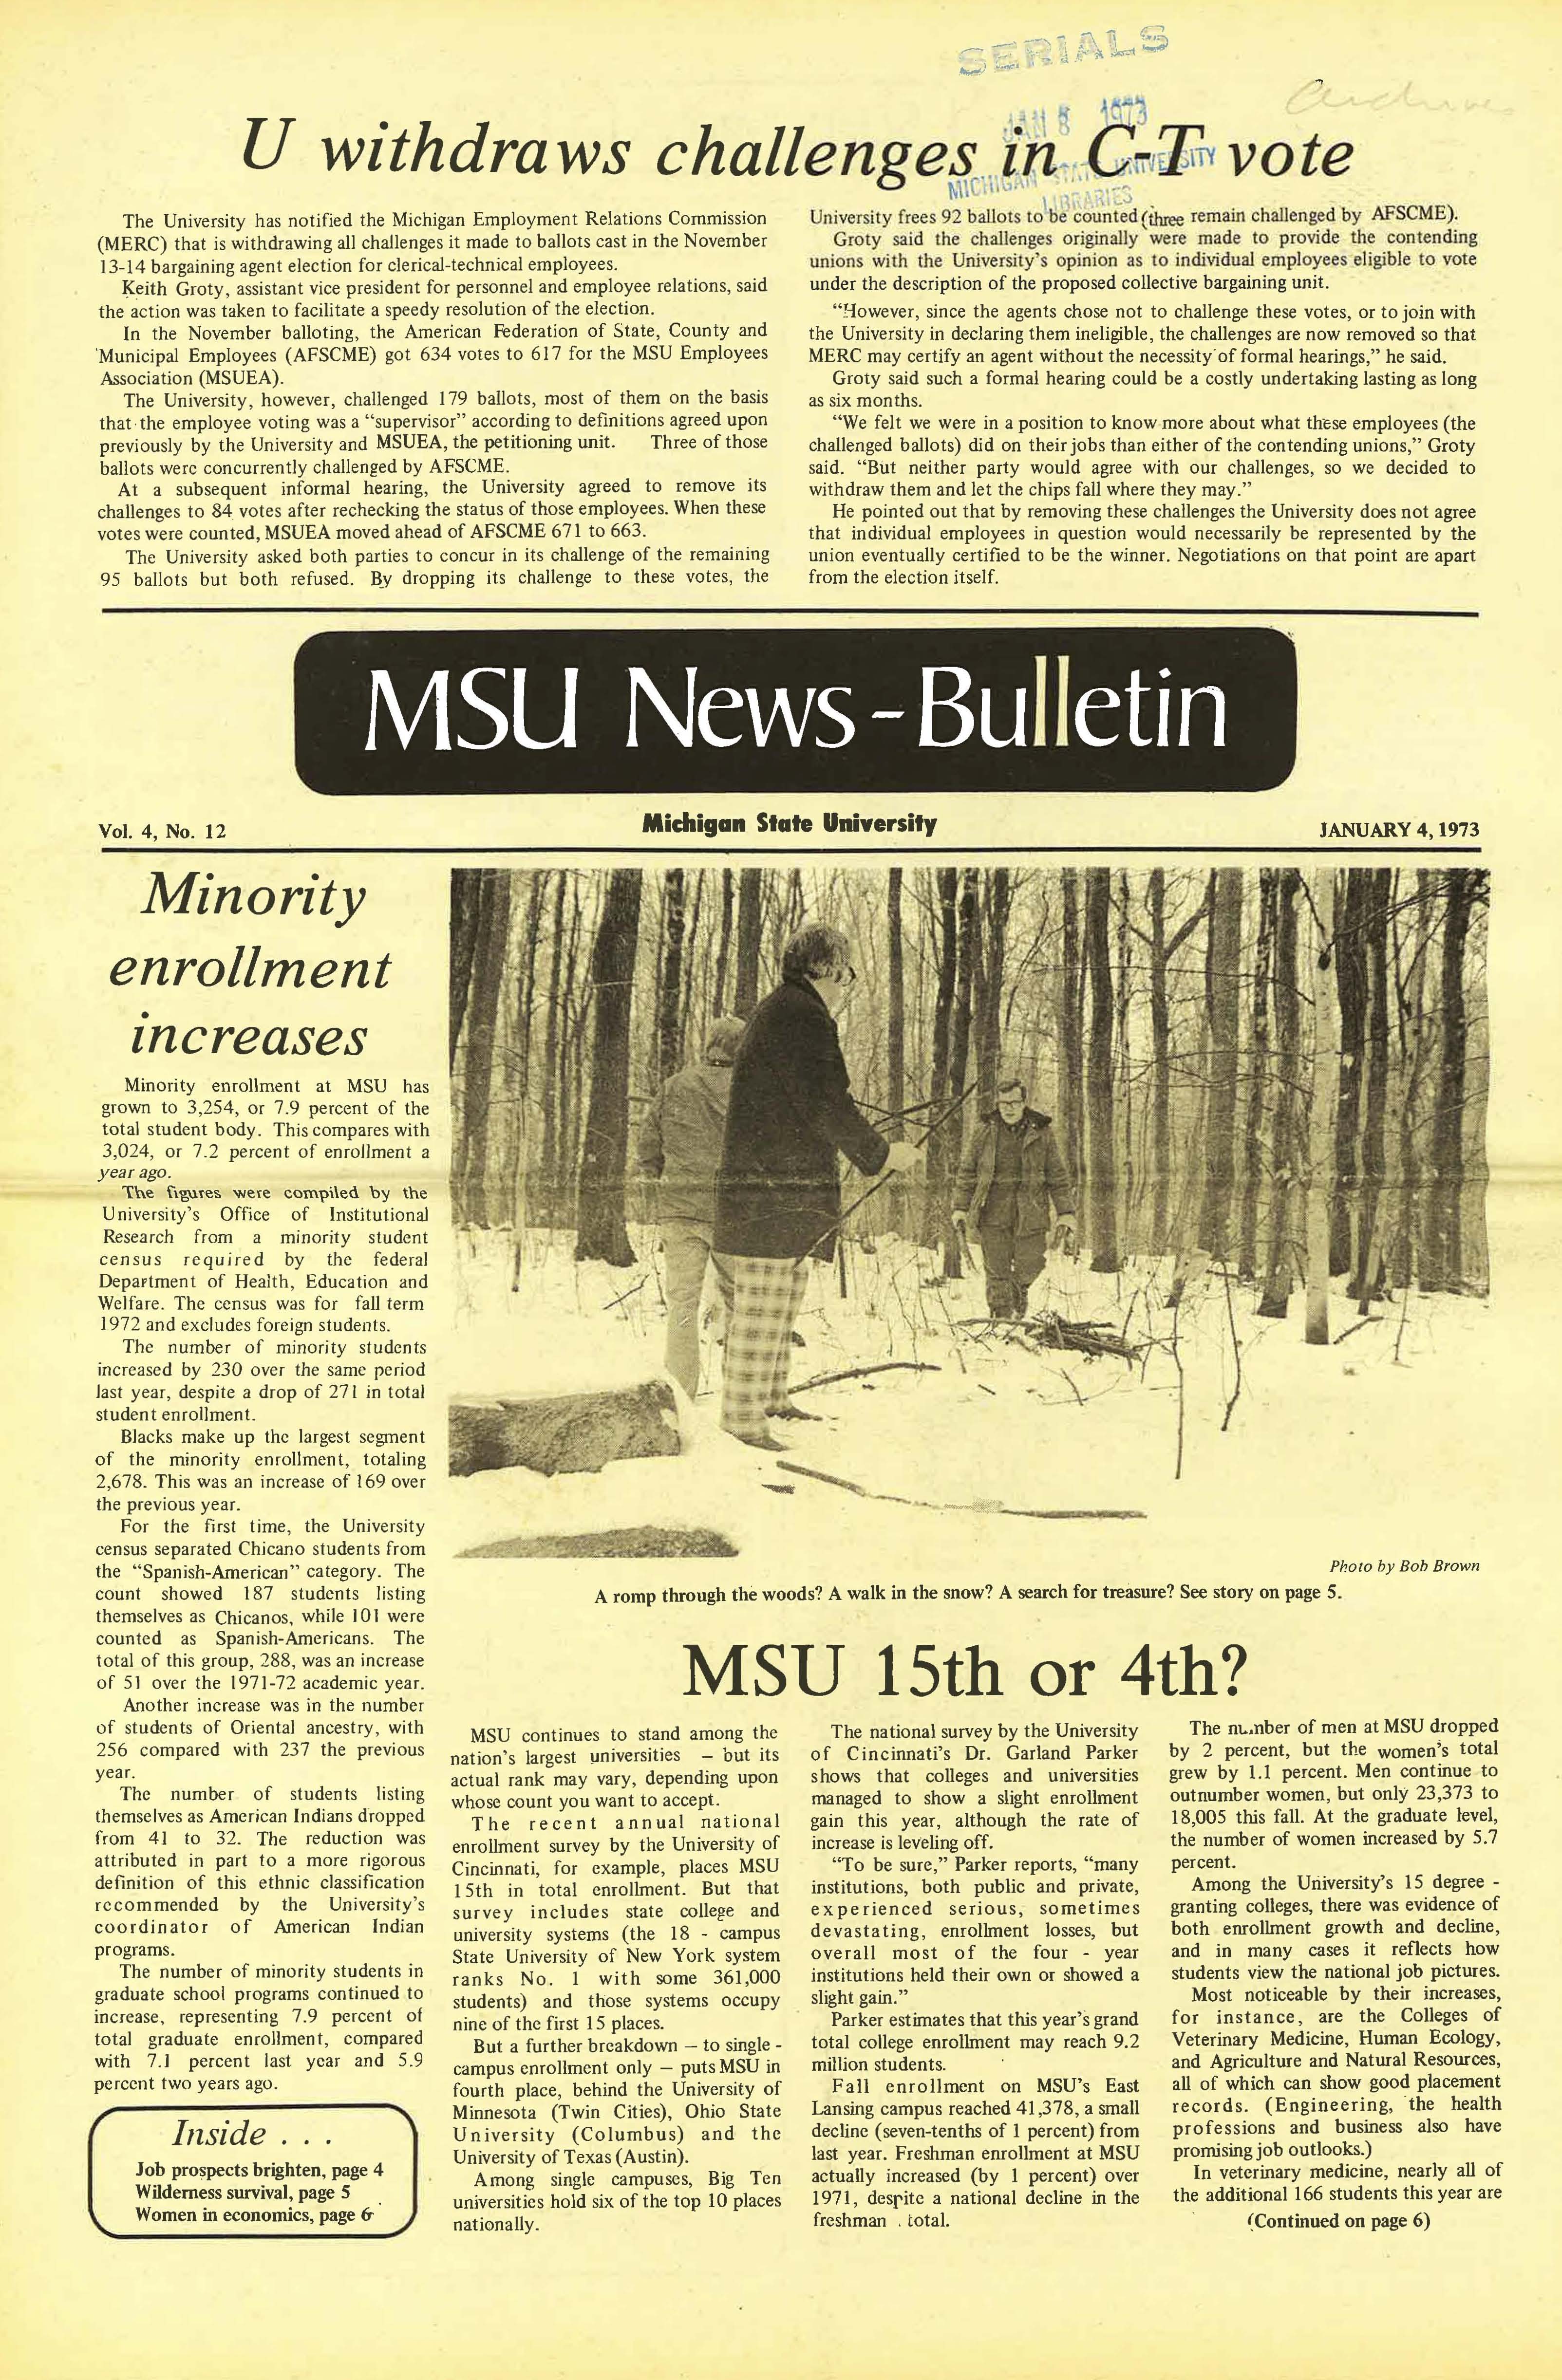 MSU News Bulletin, vol. 4, No. 28, May 10, 1973